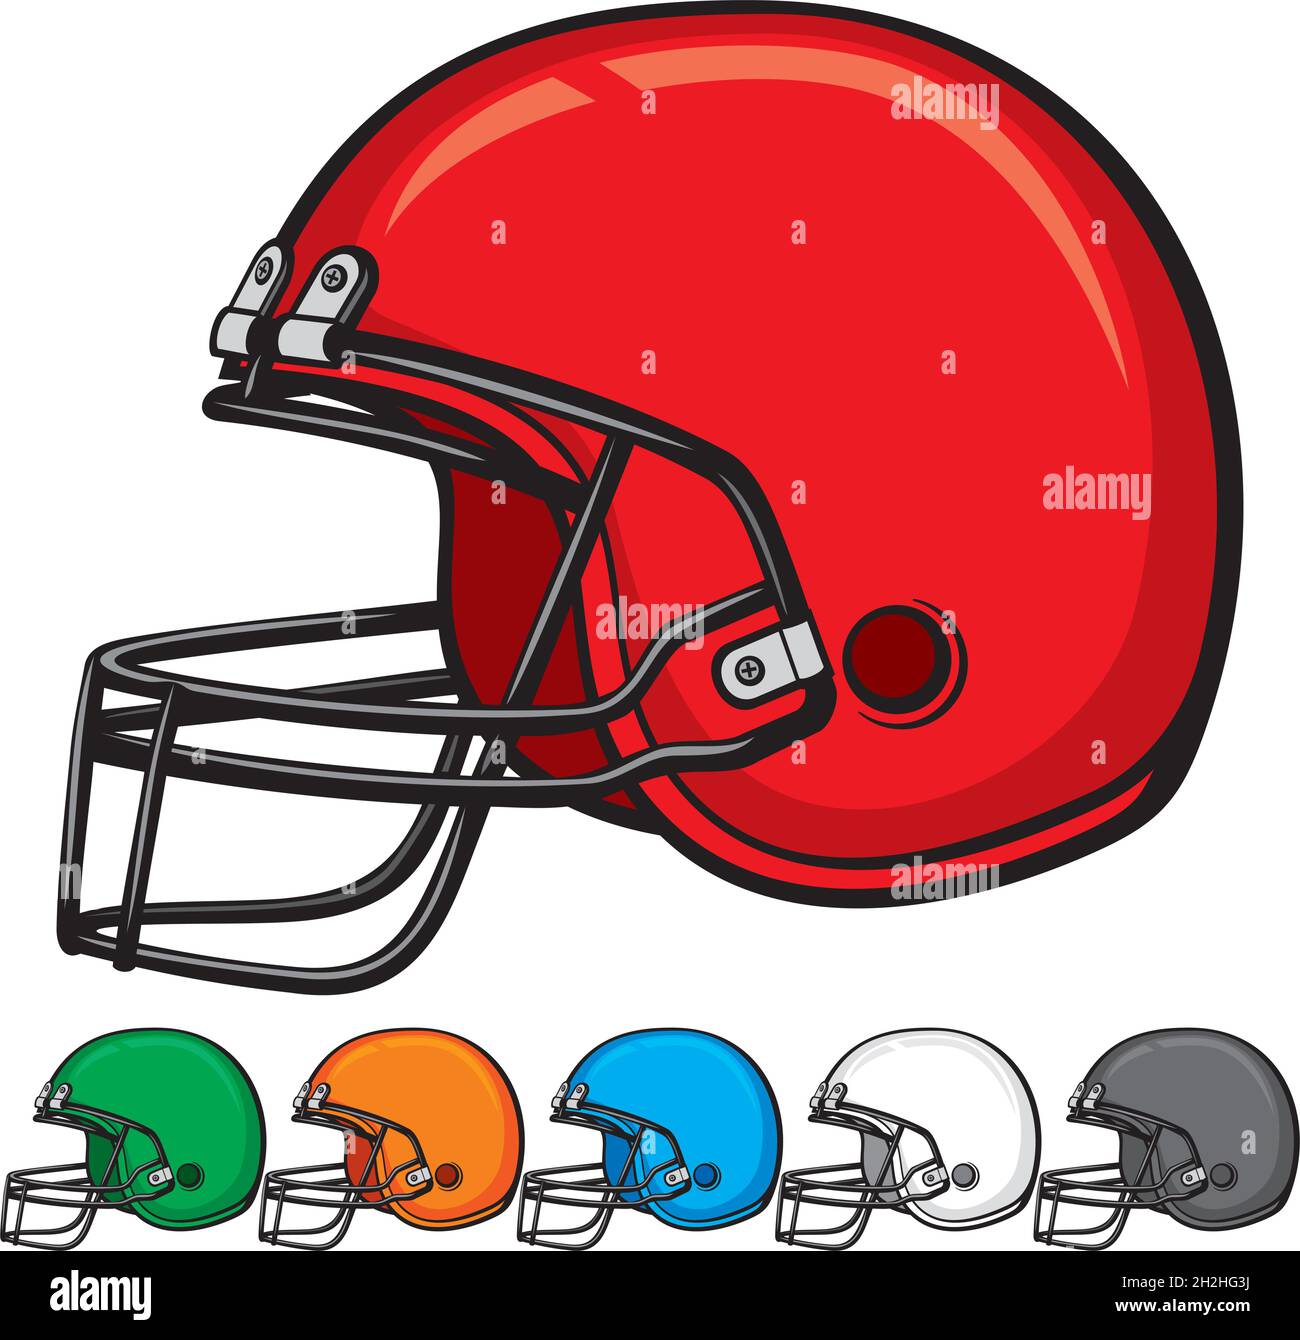 https://c8.alamy.com/compes/2h2hg3j/coleccion-de-cascos-de-futbol-americano-ilustracion-vectorial-2h2hg3j.jpg